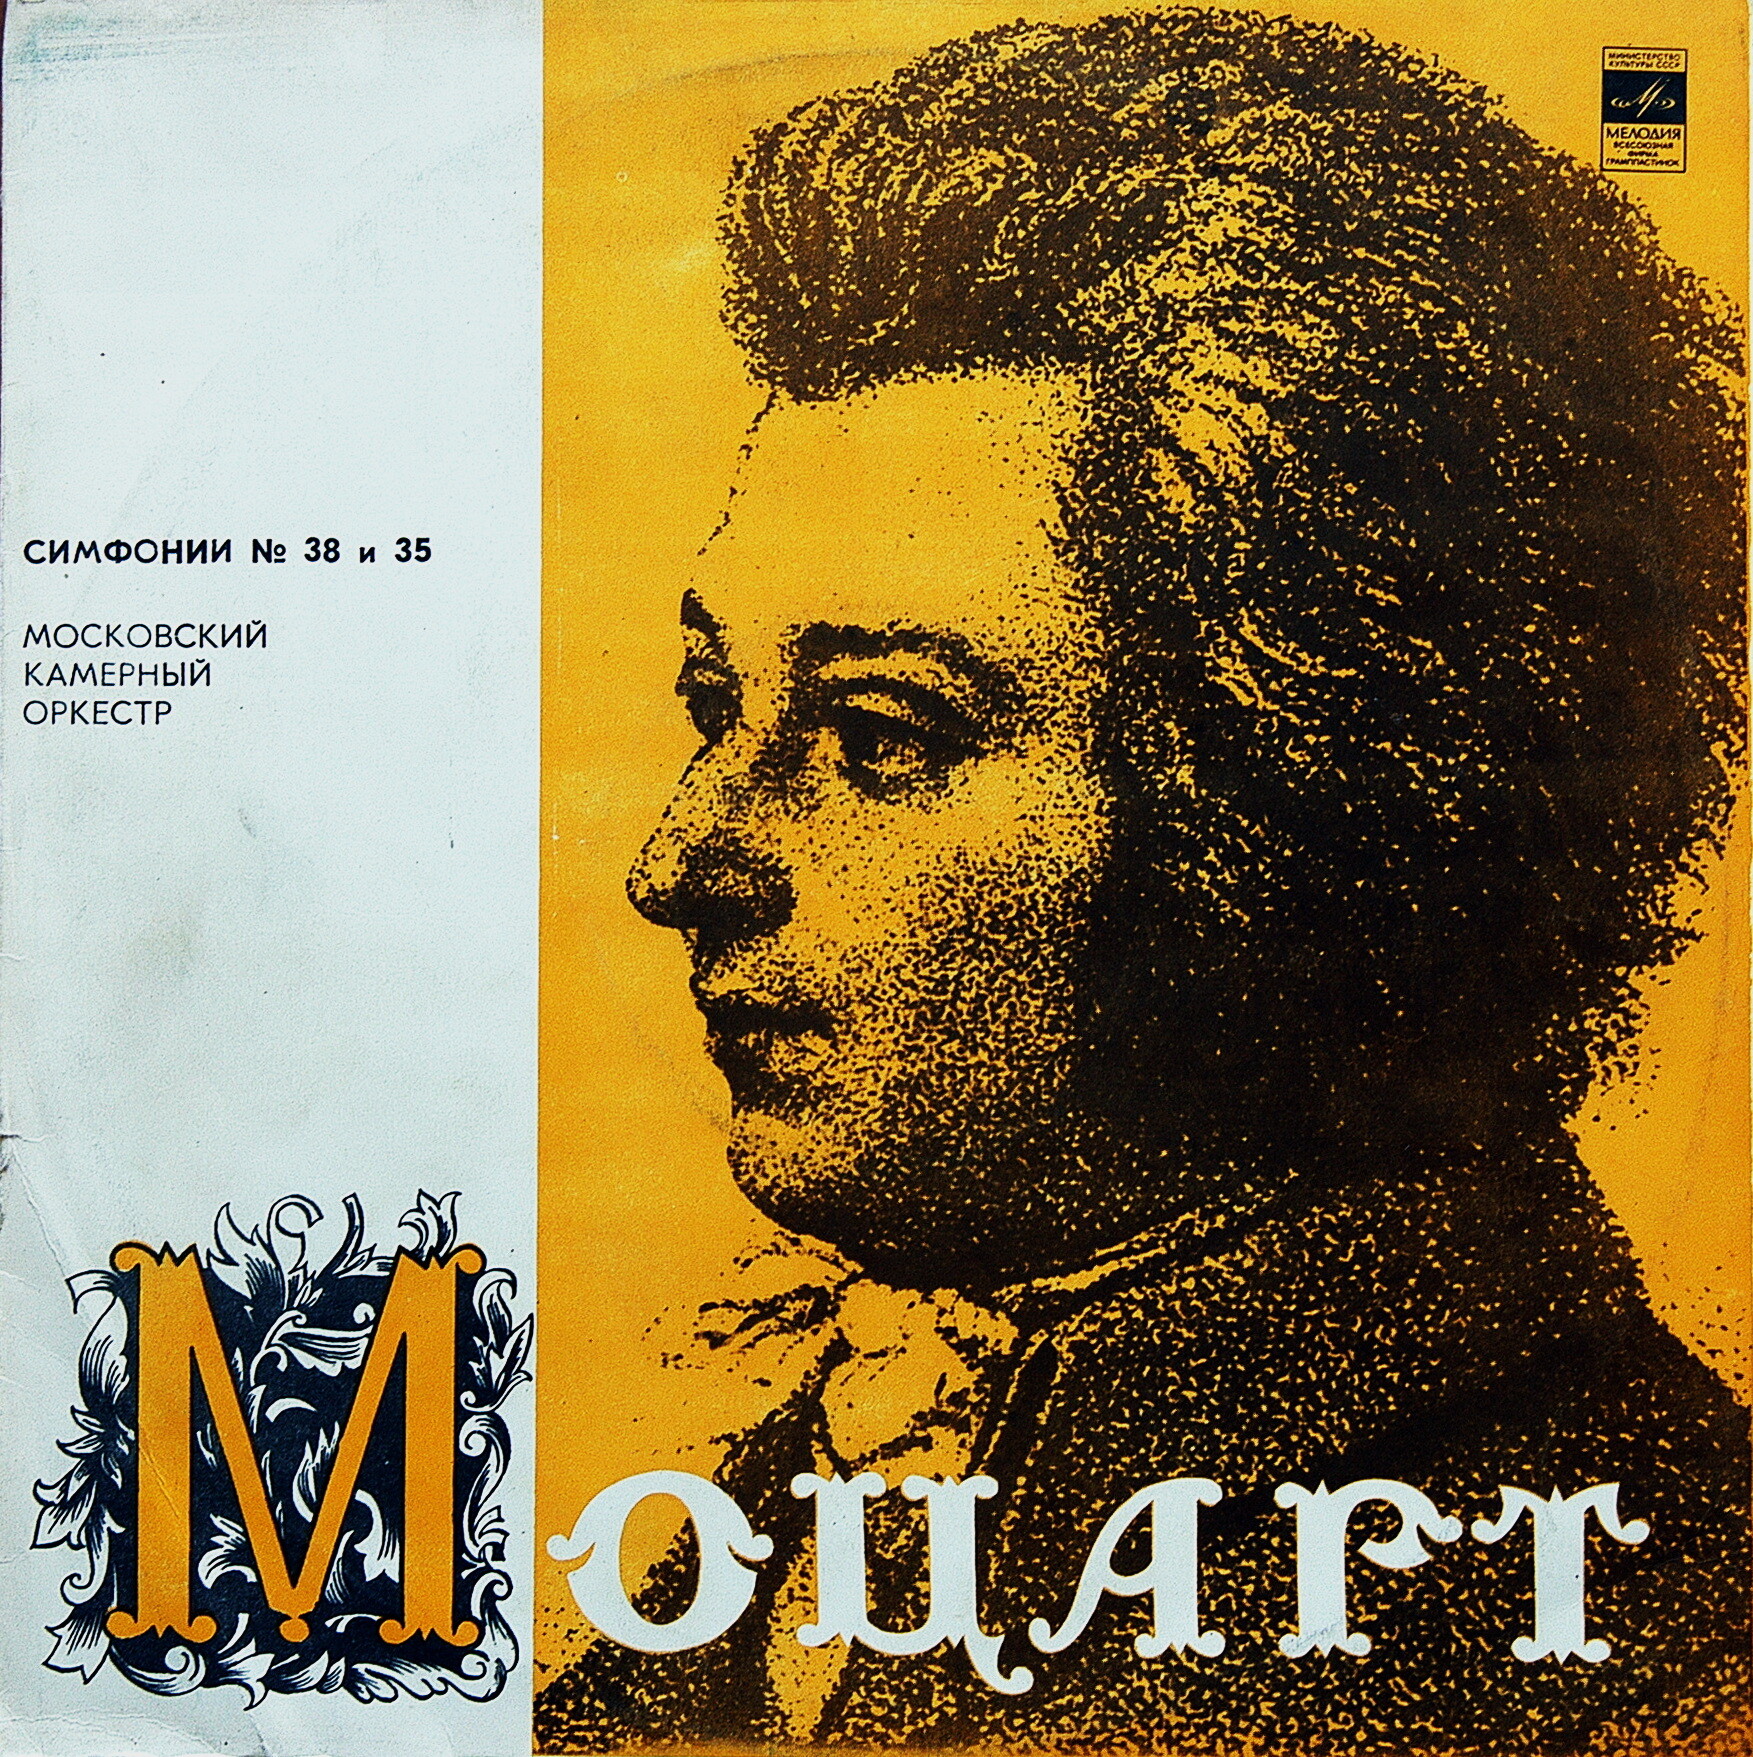 В. Моцарт: Симфонии №№ 35, 38 (МКО, Р. Баршай)